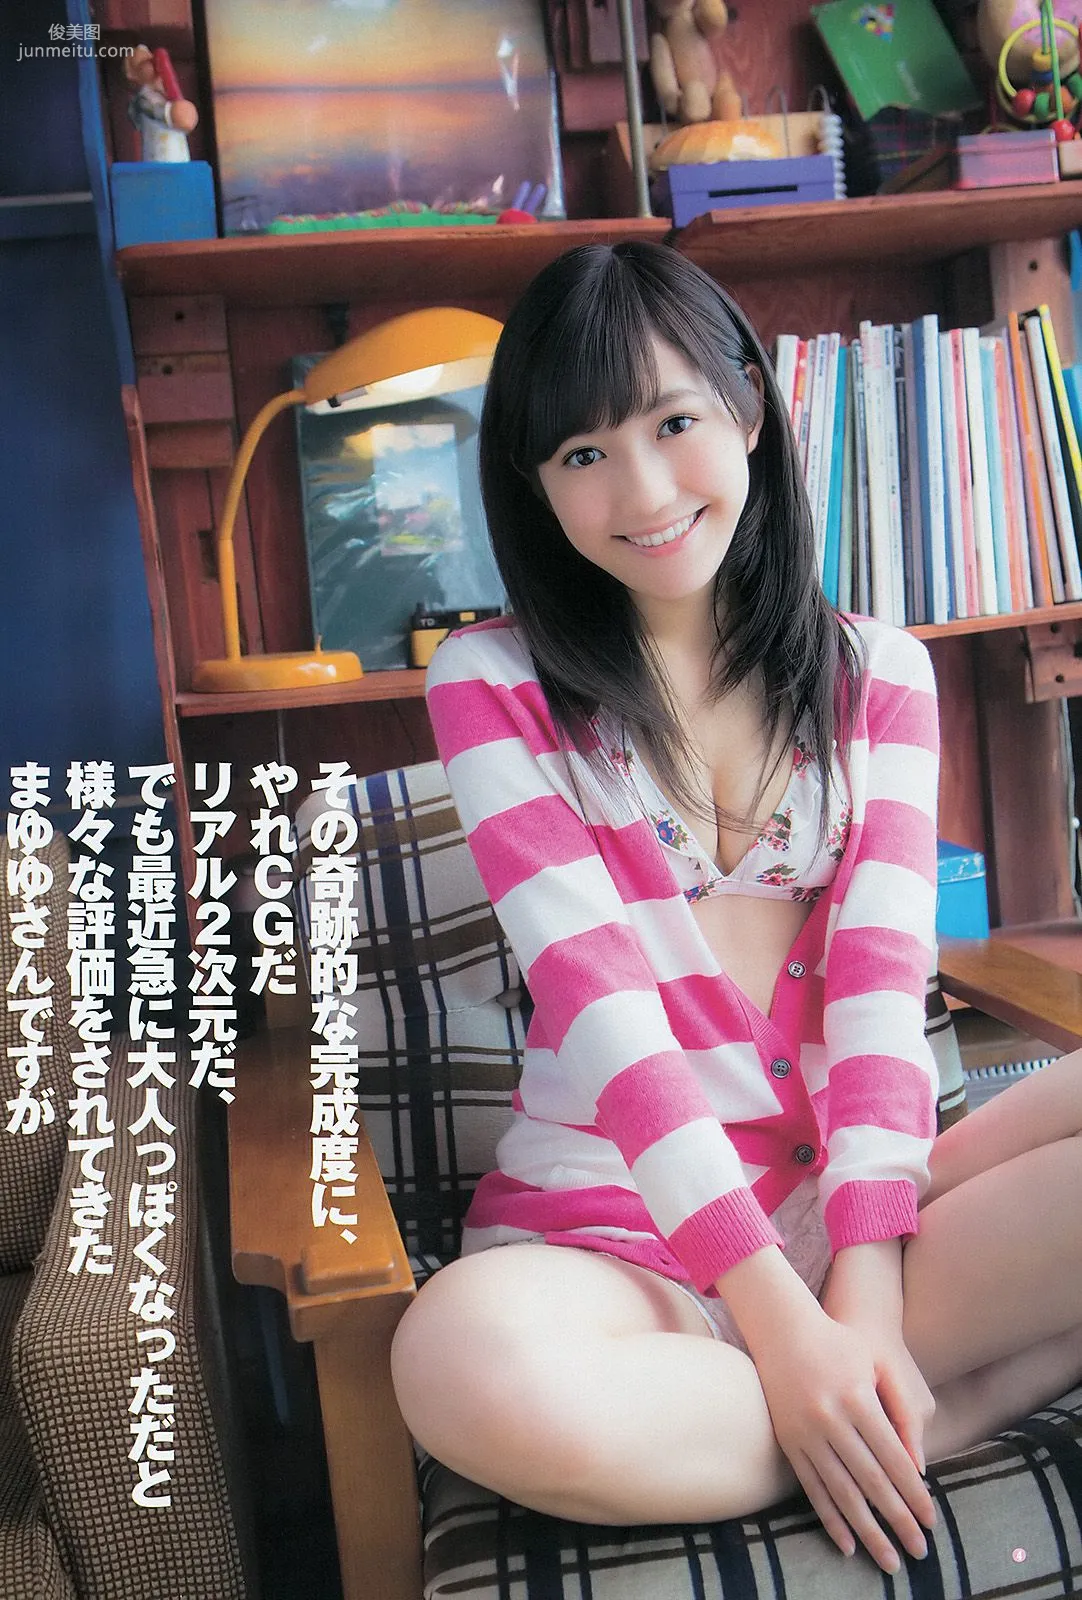 渡辺麻友 山本彩 [Weekly Young Jump] 2012年No.52 写真杂志5